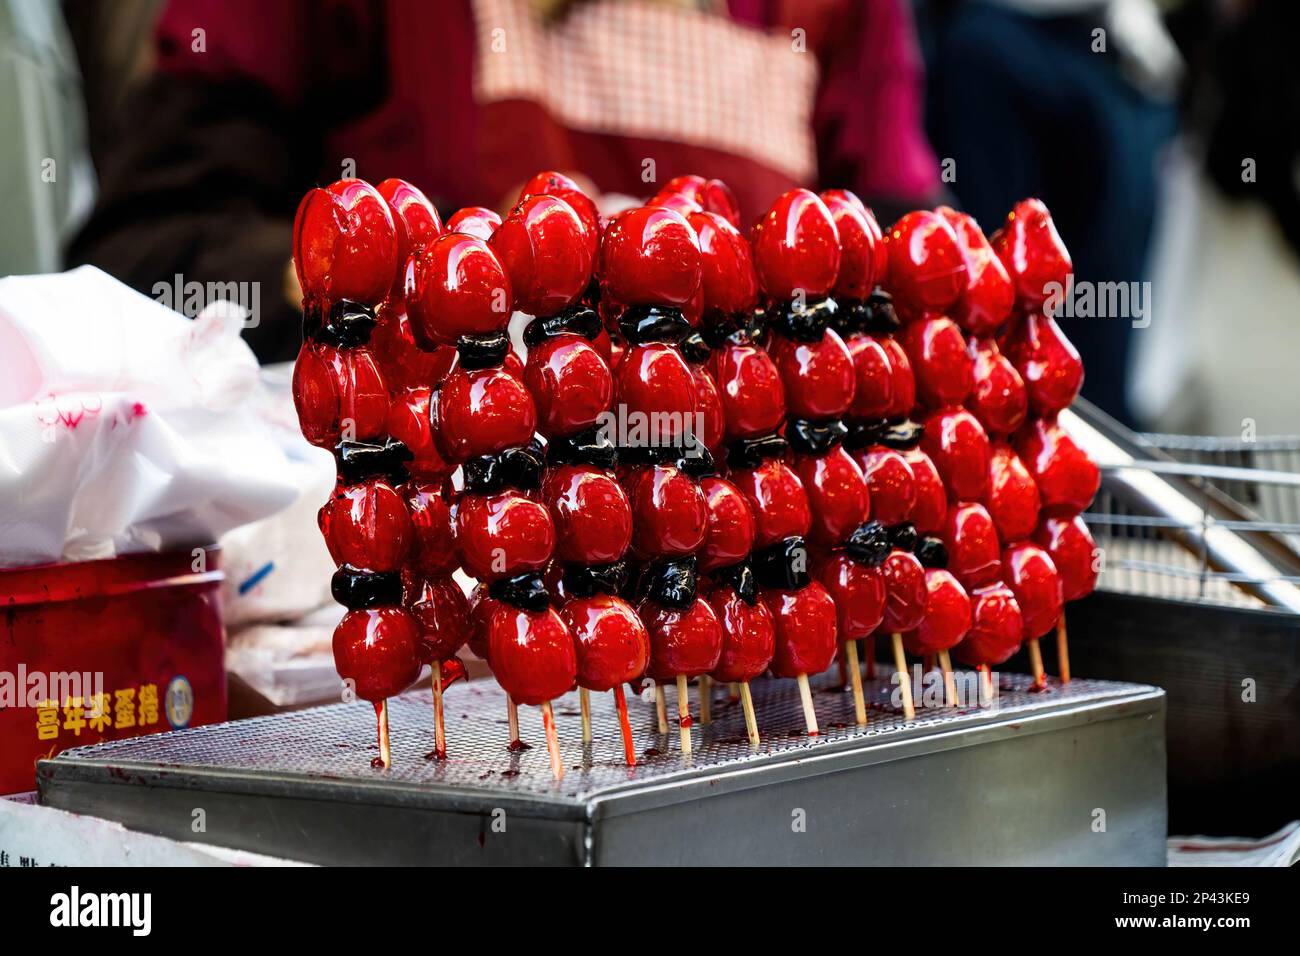 Zuckerbeschichtete Erdbeeren auf einem Stock werden auf einem Markt in Taichung zum Verkauf angeboten. Das tägliche Leben in Taichung, der zweitgrößten Stadt Taiwans. Um mehr internationale Touristen anzulocken, kündigte die taiwanesische Regierung kürzlich an, dass sie 5000 Taiwan-Dollar (ca. 165 USD) als Teil eines Konjunkturpakets zur Unterstützung der Reisesubventionierung für Touristen bereitstellen werde. Stockfoto